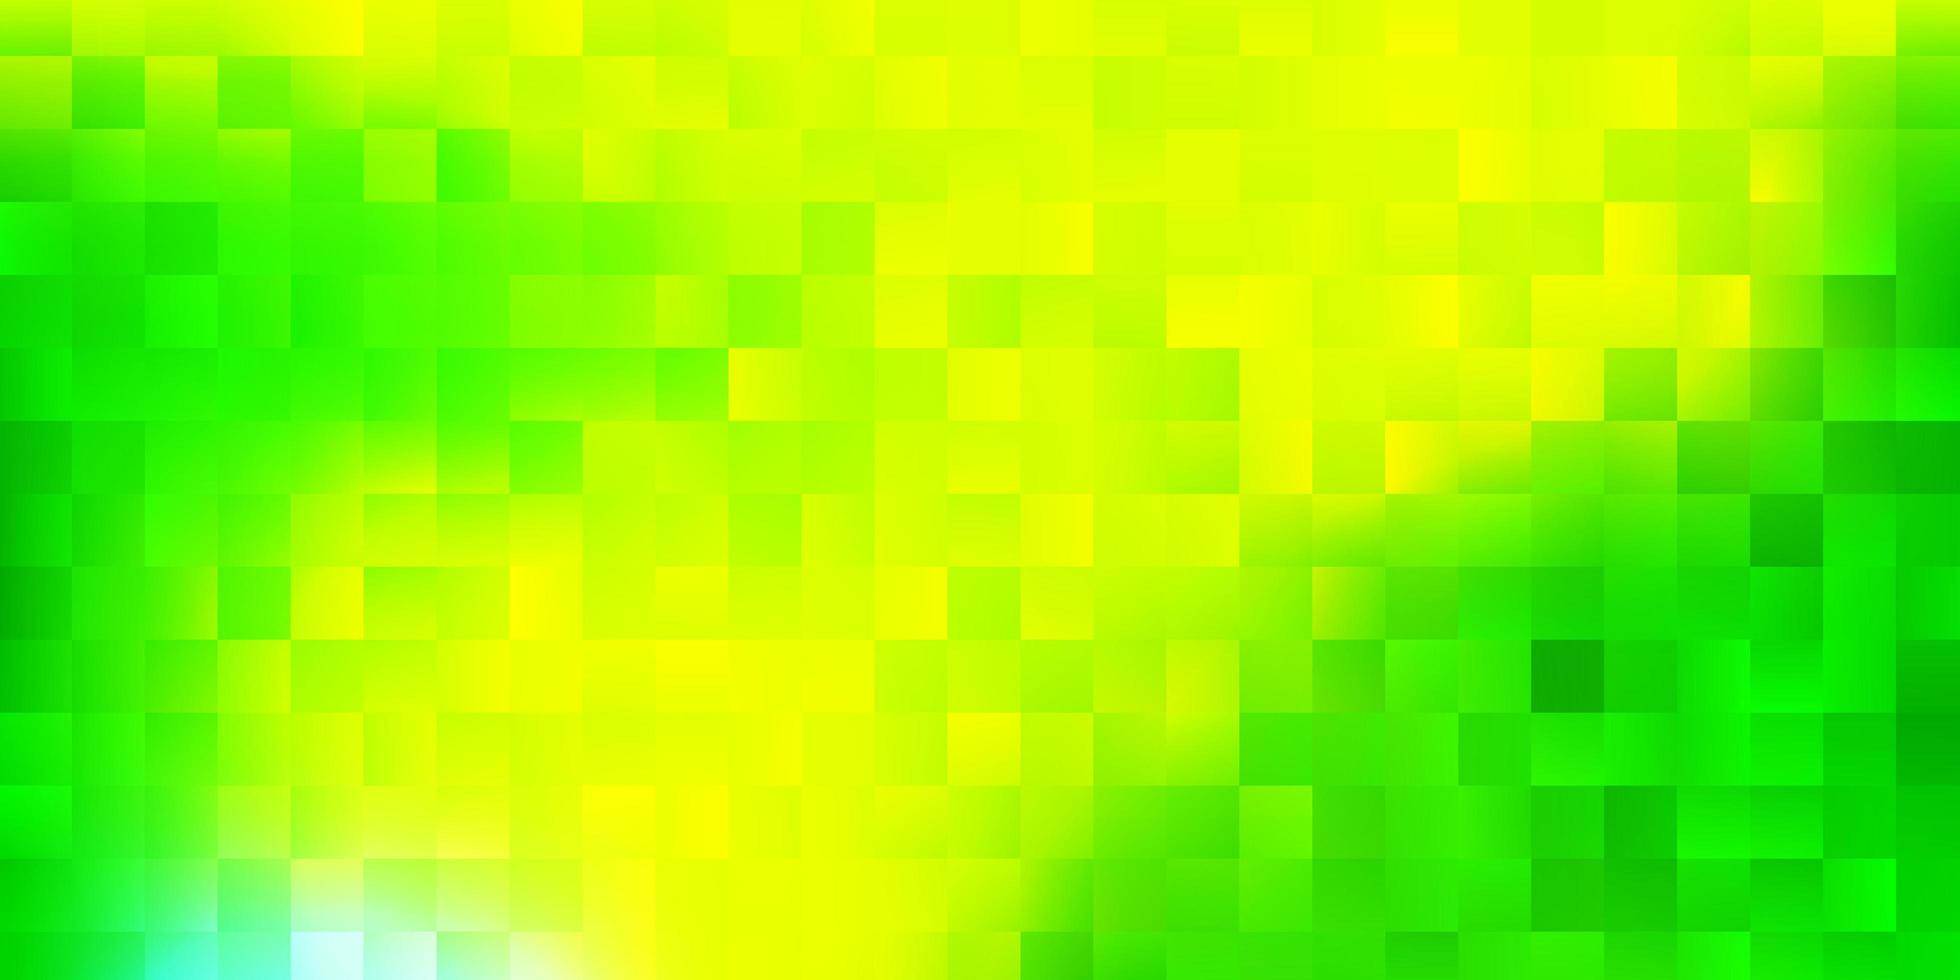 couverture vectorielle vert clair et jaune dans un style carré. vecteur